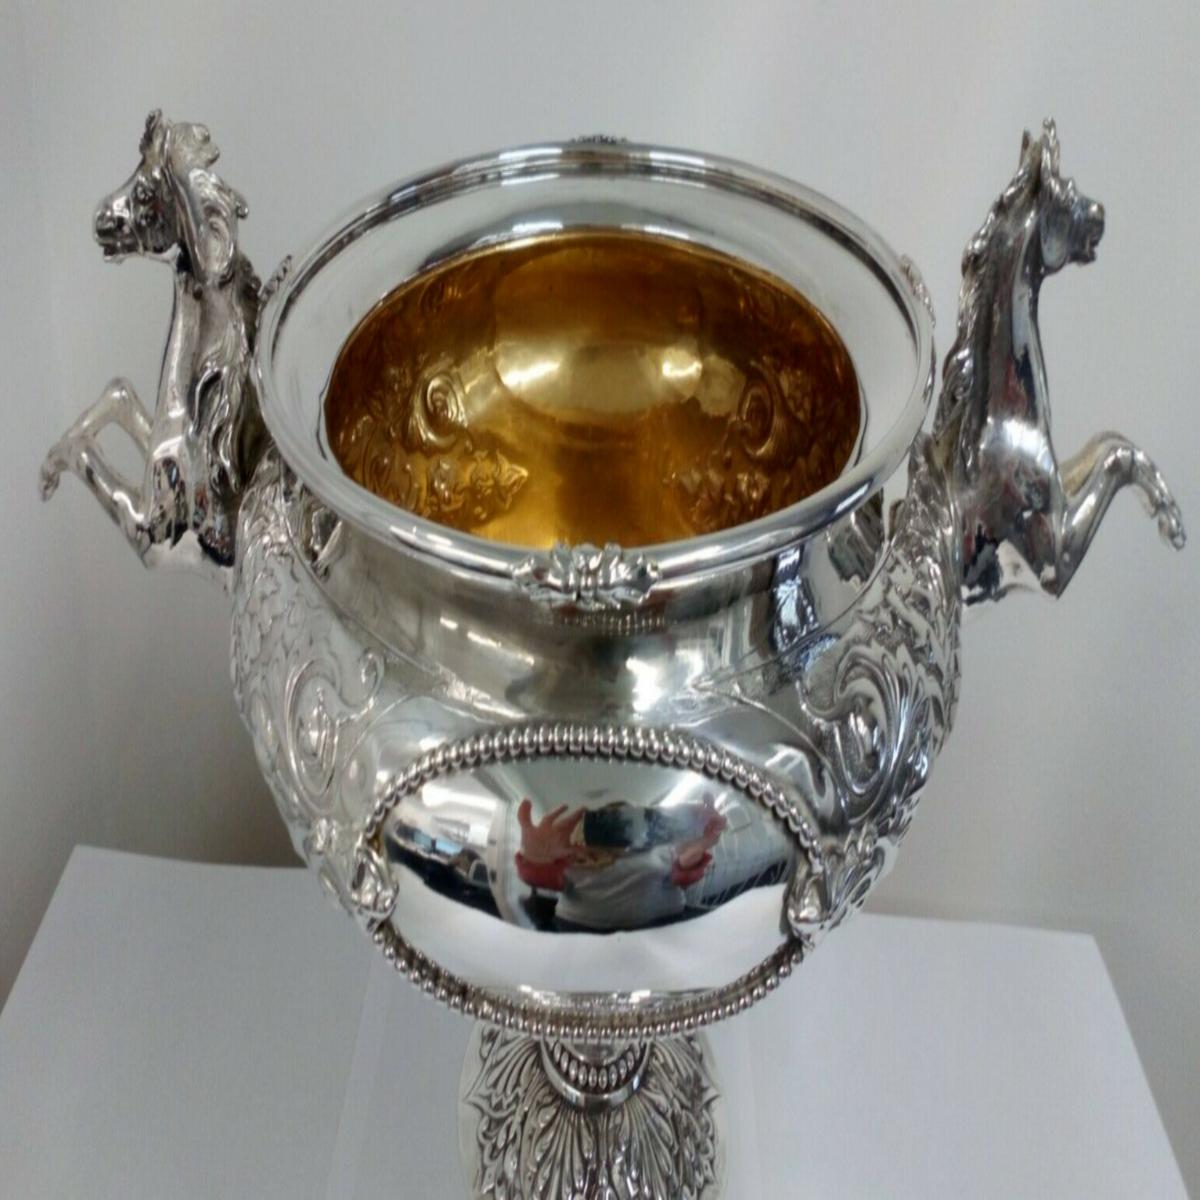 Grande trofeo da equitazione vittoriano in argento sterling di Robert Hennell III del 1867

In ottime condizioni, si tratta di un imponente centrotavola vittoriano in argento con due teste di cavallo e manici di gambe al galoppo.

La ciotola è